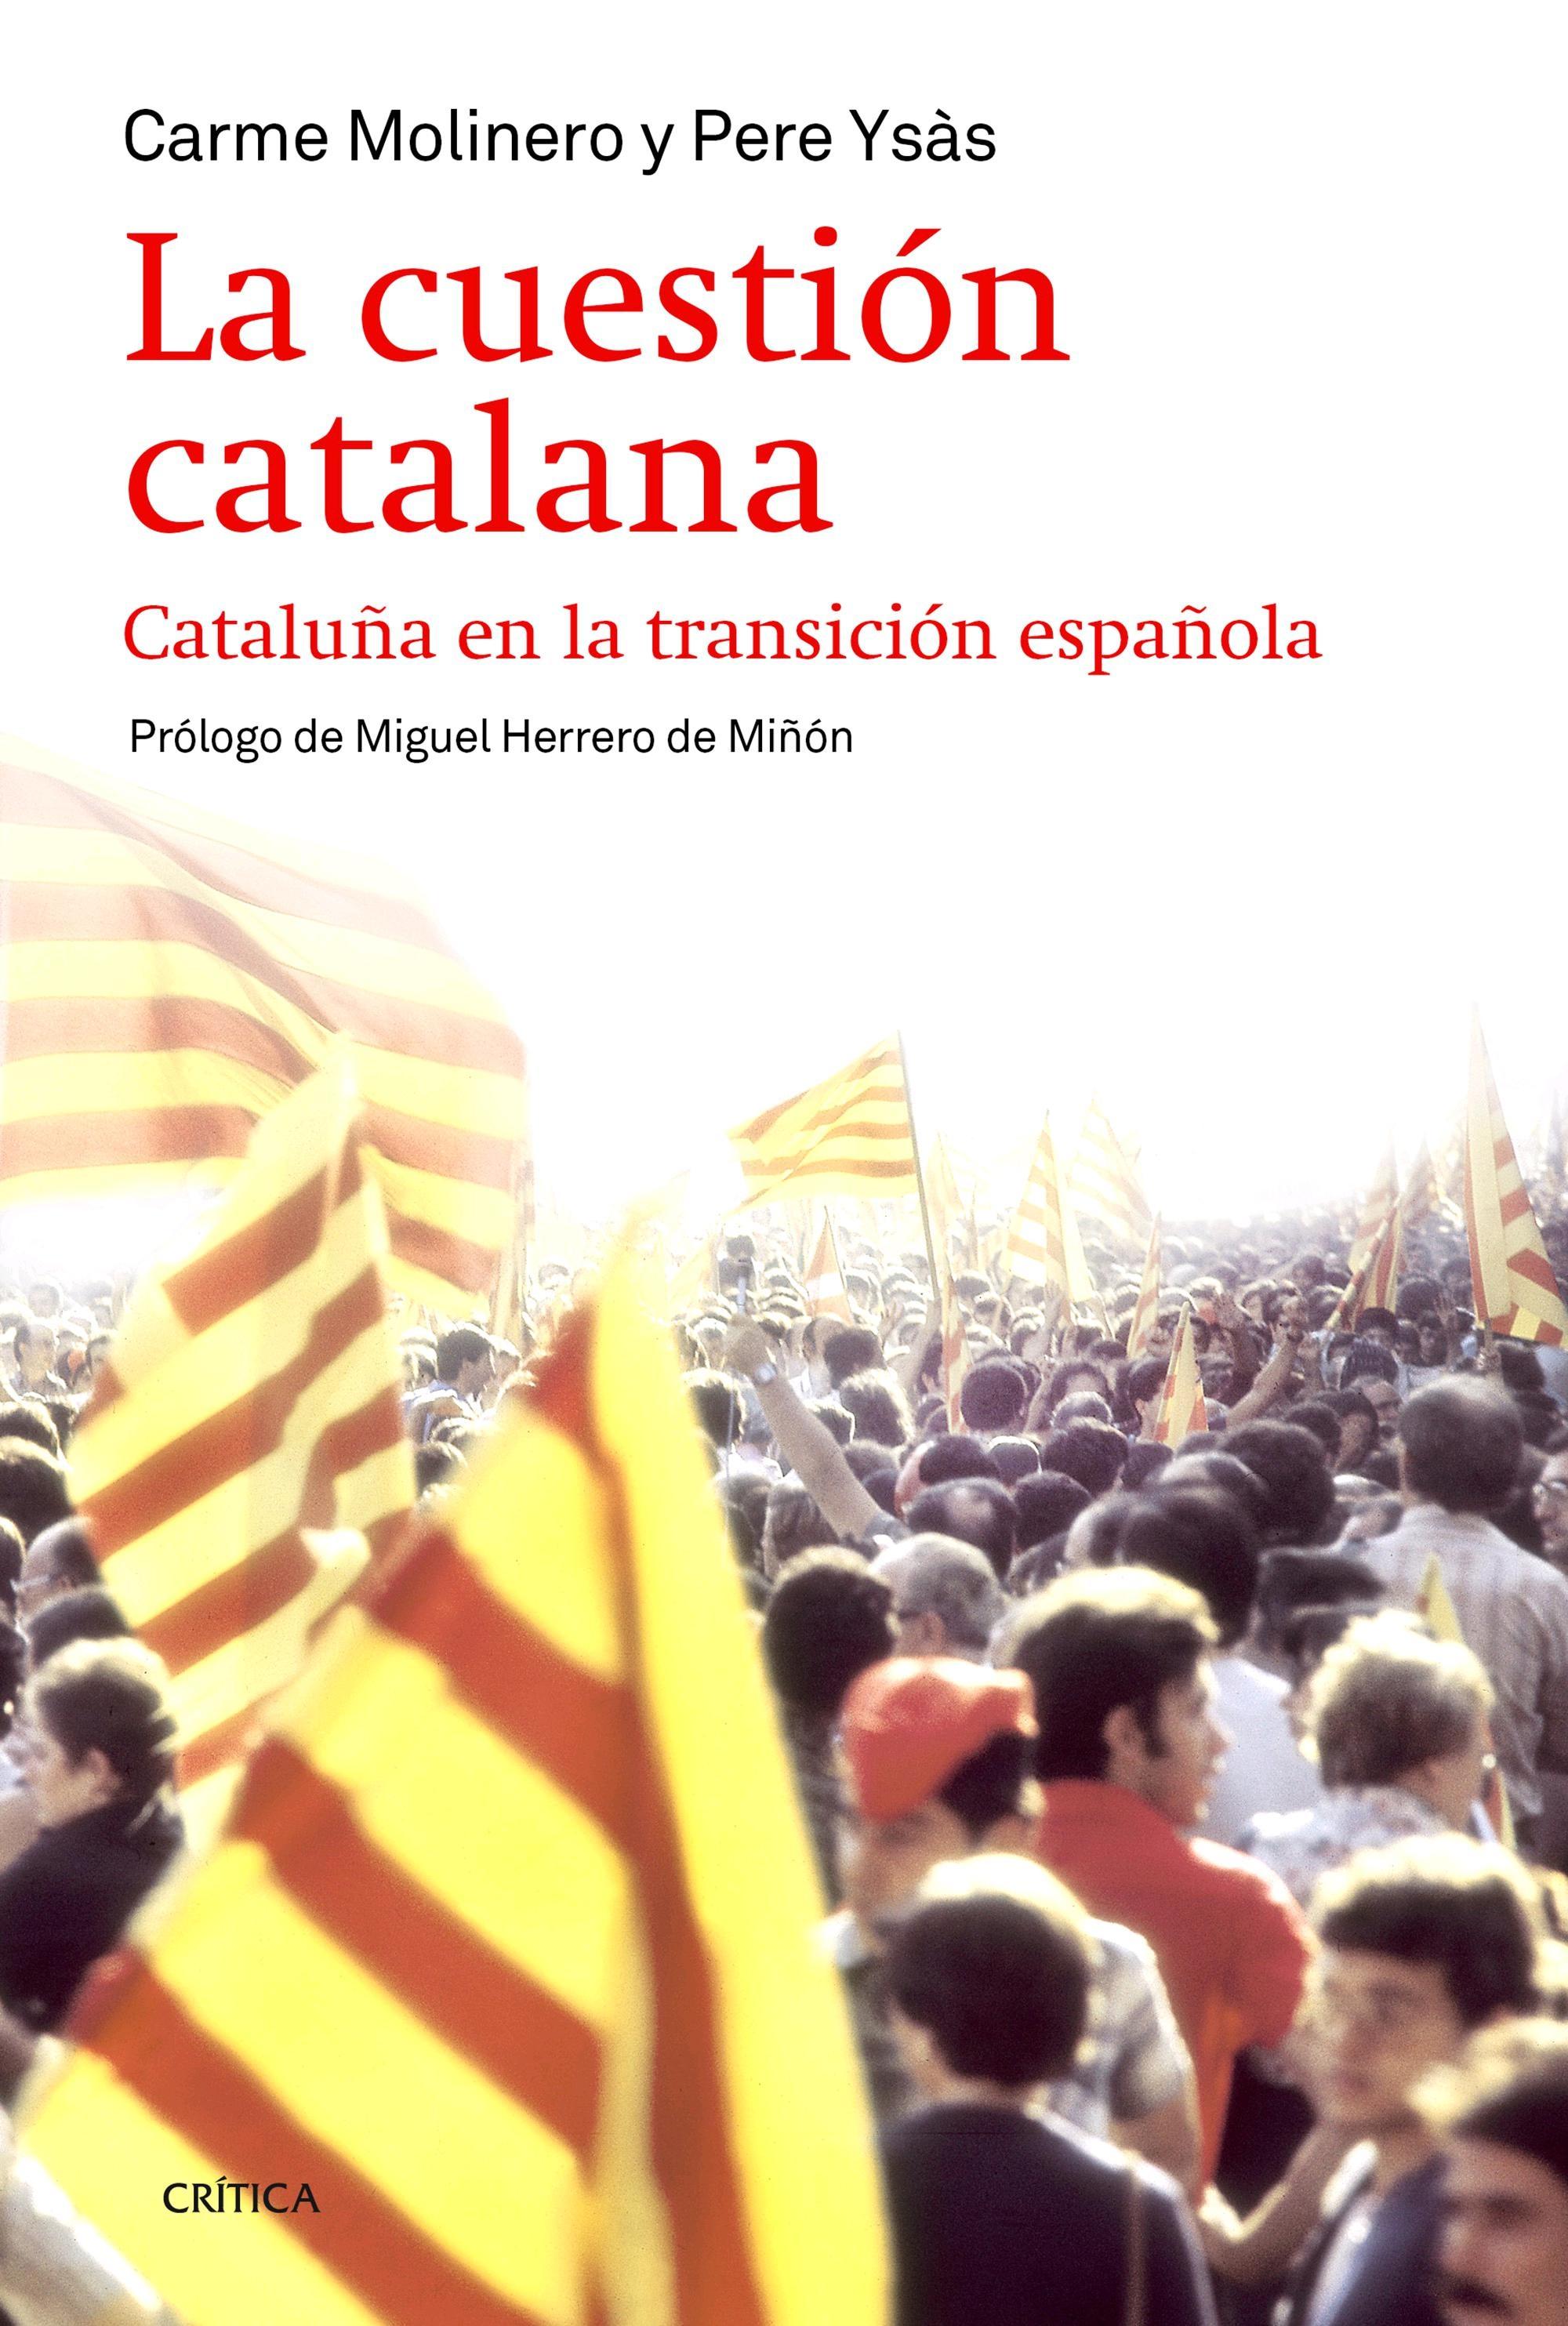 La Cuestión Catalana "Cataluña en la Transición Española"